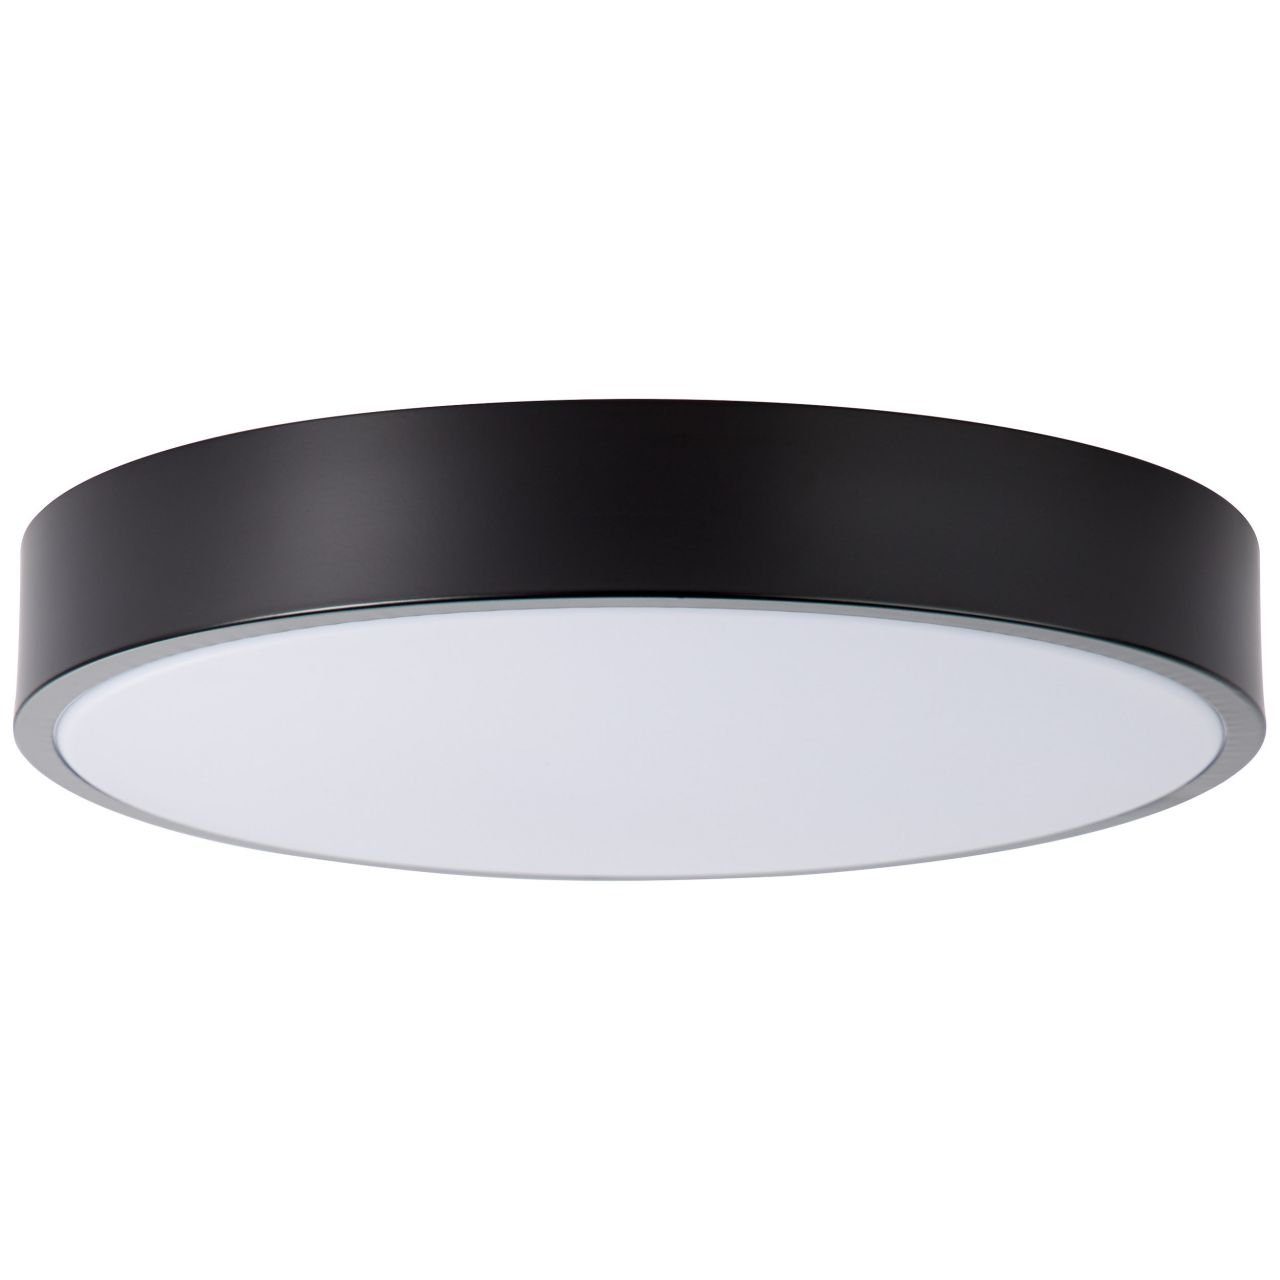 Slimline, LED 1x 3000K, weiß/schwarz Slimline Brilliant Deckenleuchte LED 33cm Deckenleuchte integr 12W Lampe